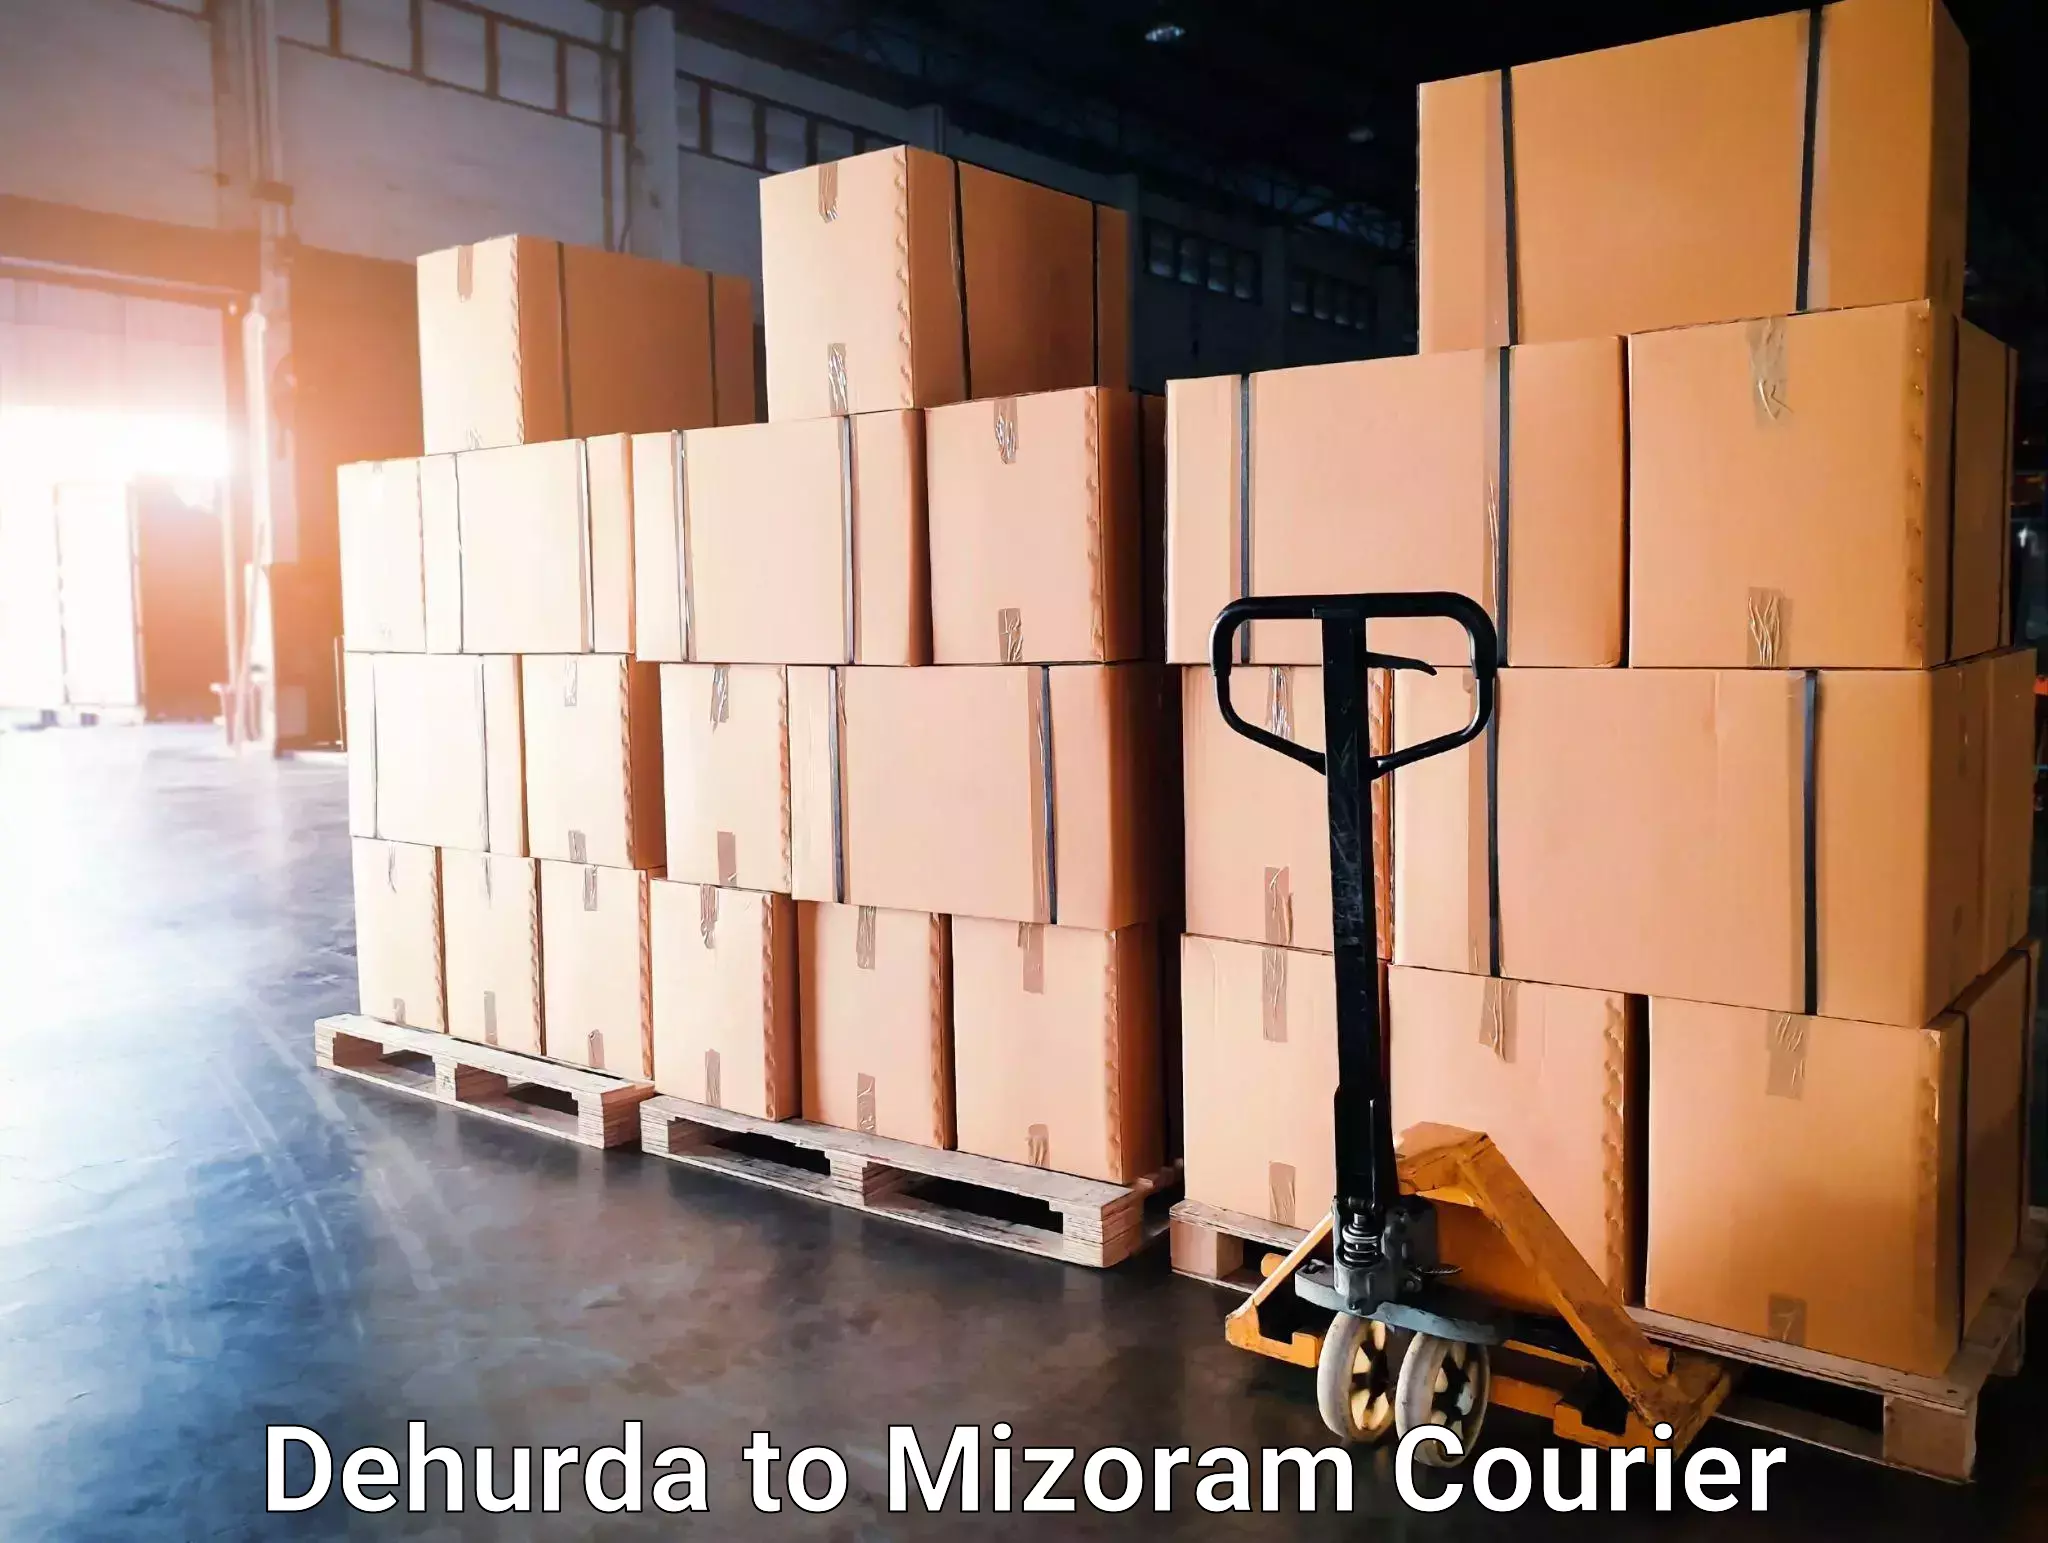 Courier services in Dehurda to Mizoram